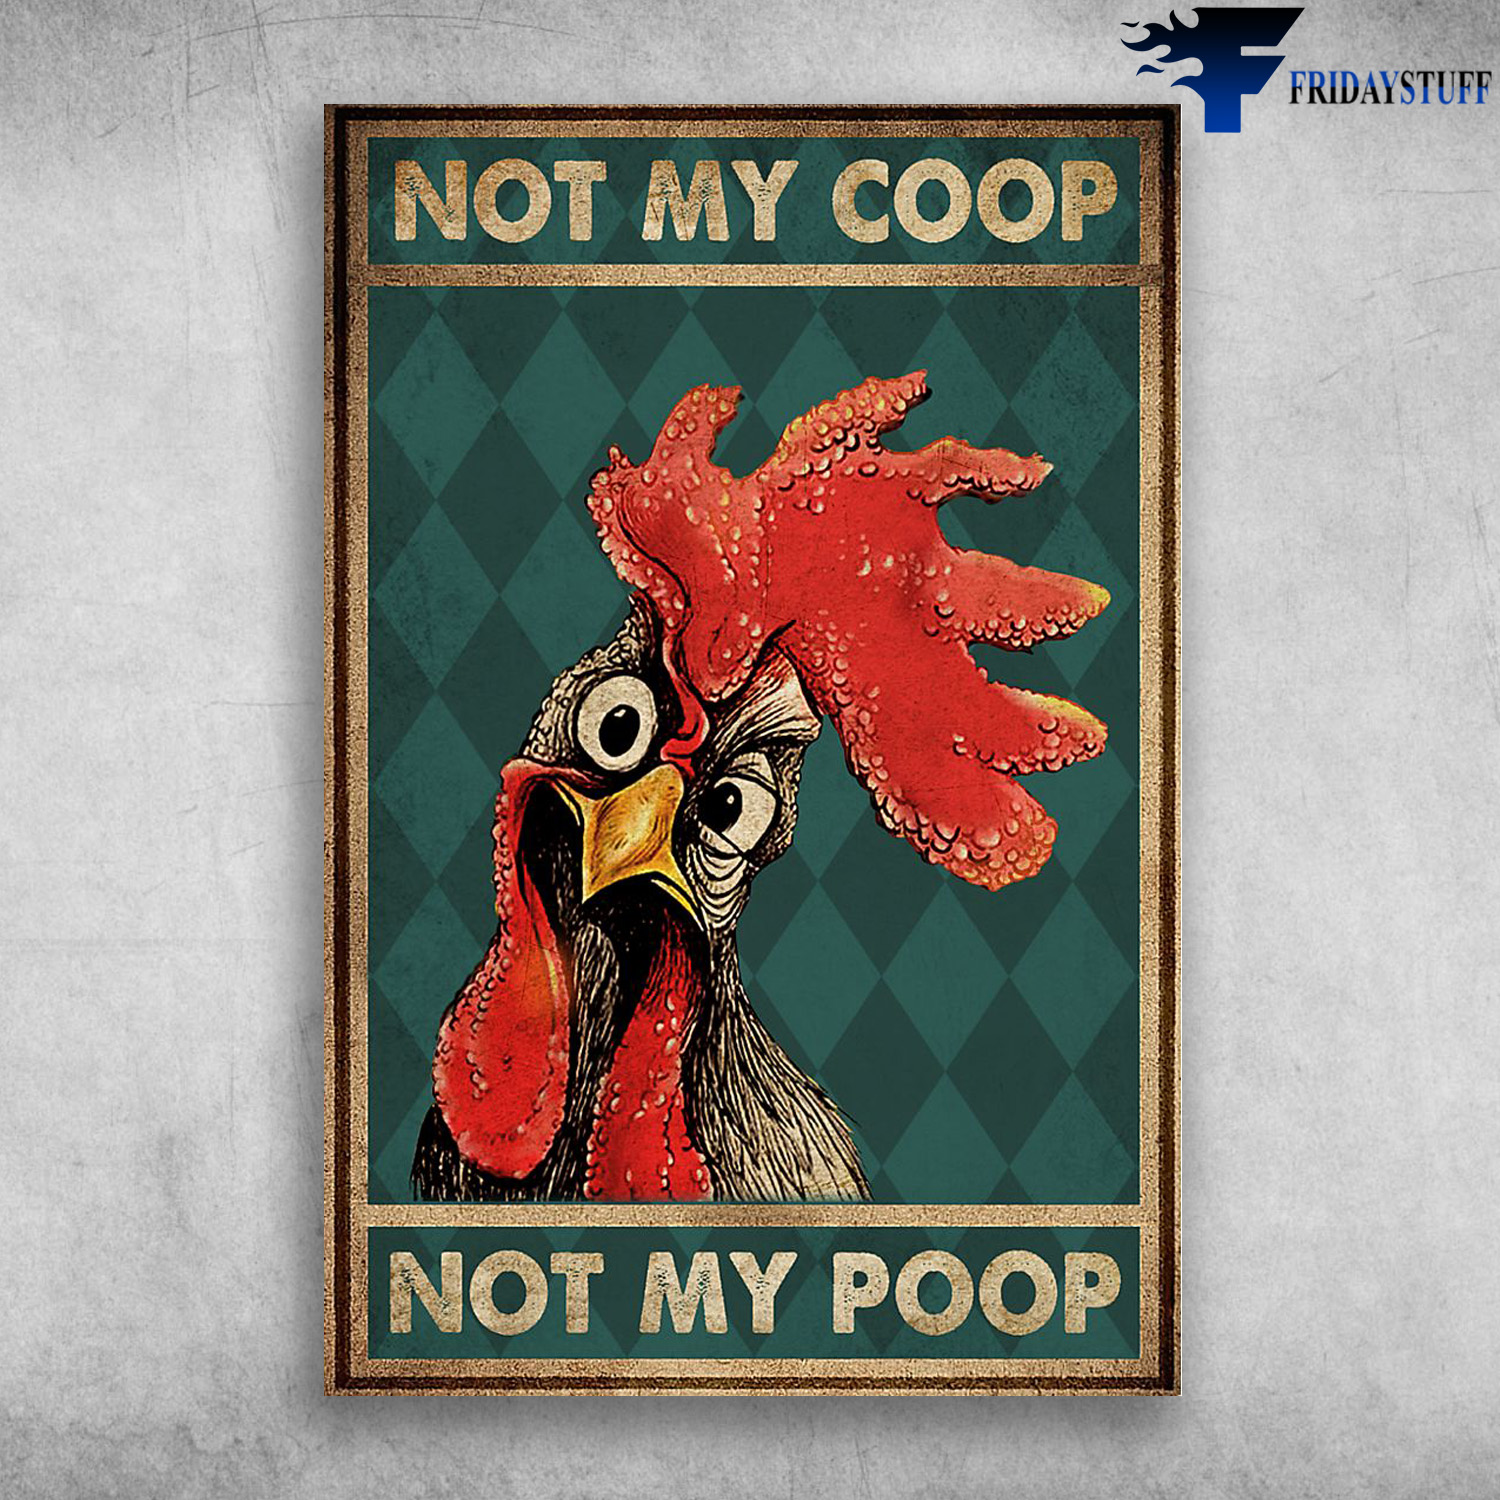 The Chicken - Not My Coop, Not My Poop